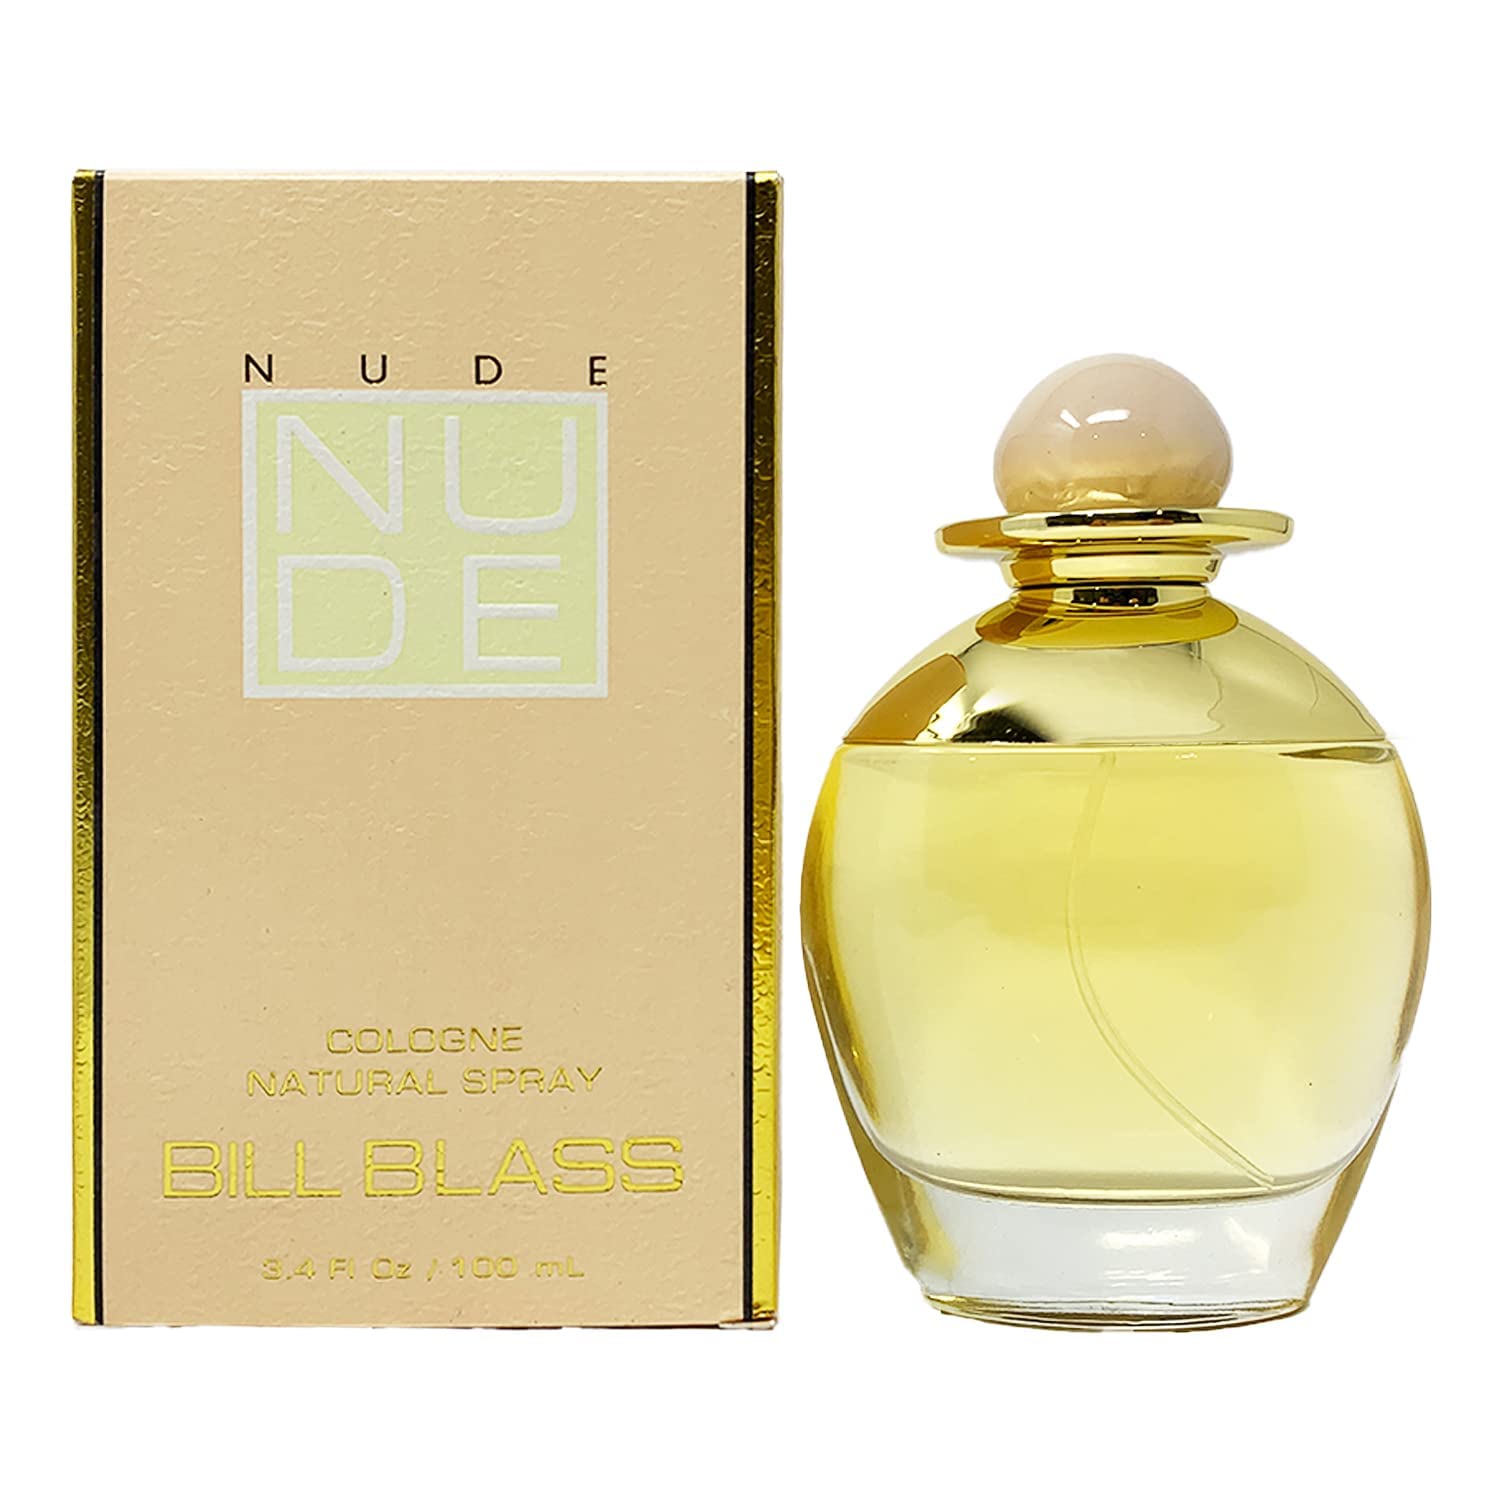 Nude by Bill Blass 3.4 oz EDC Spray for Women